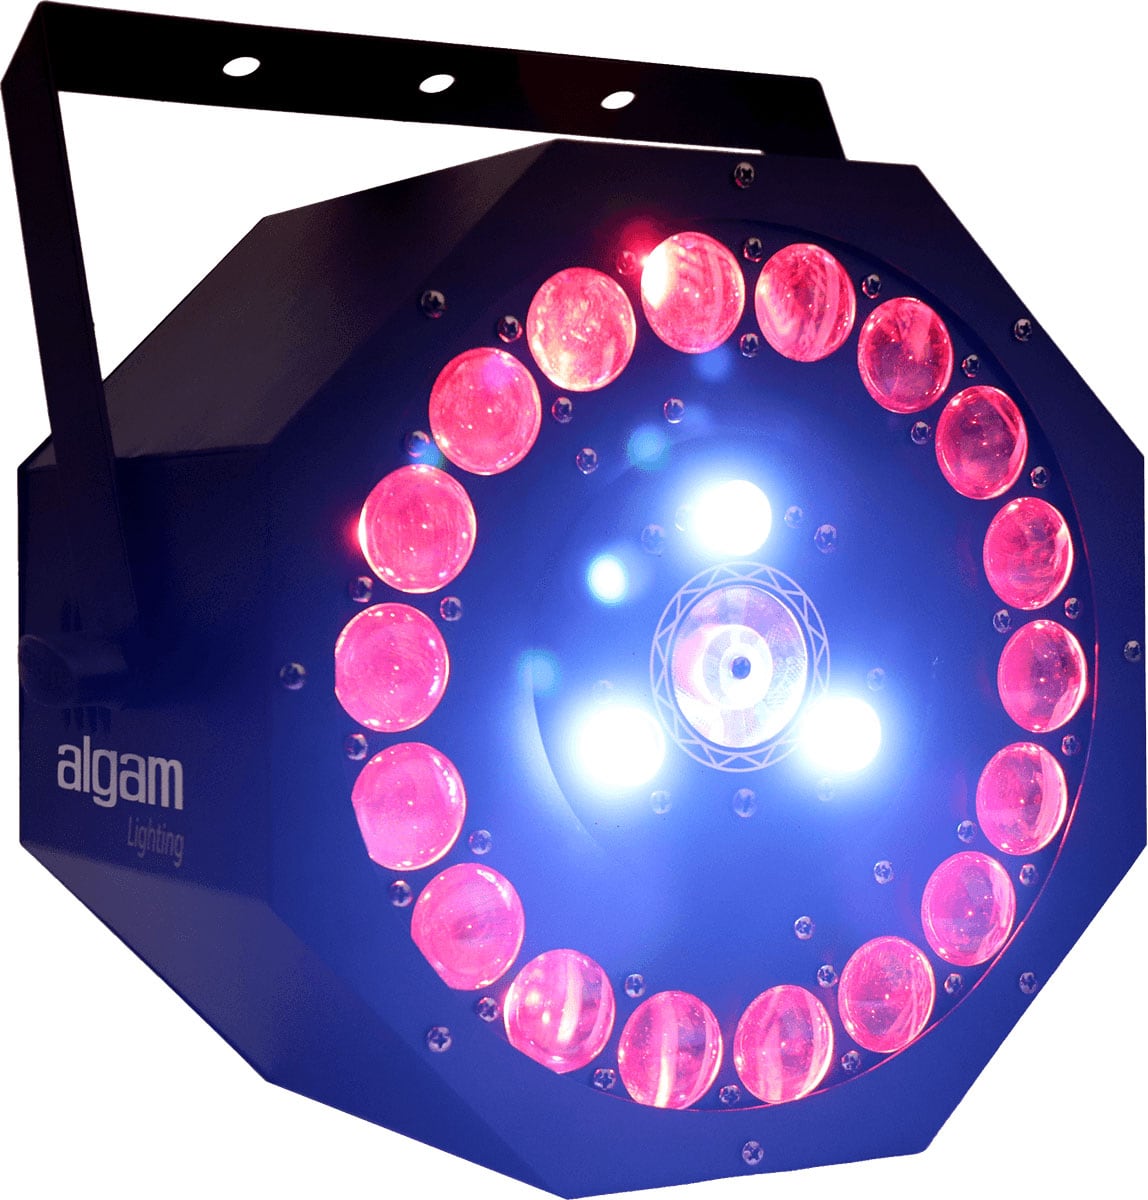 ALGAM LIGHTING SUNFLOWER - 3 X 18W 3 EN 1 EFECTO LED CON LASER